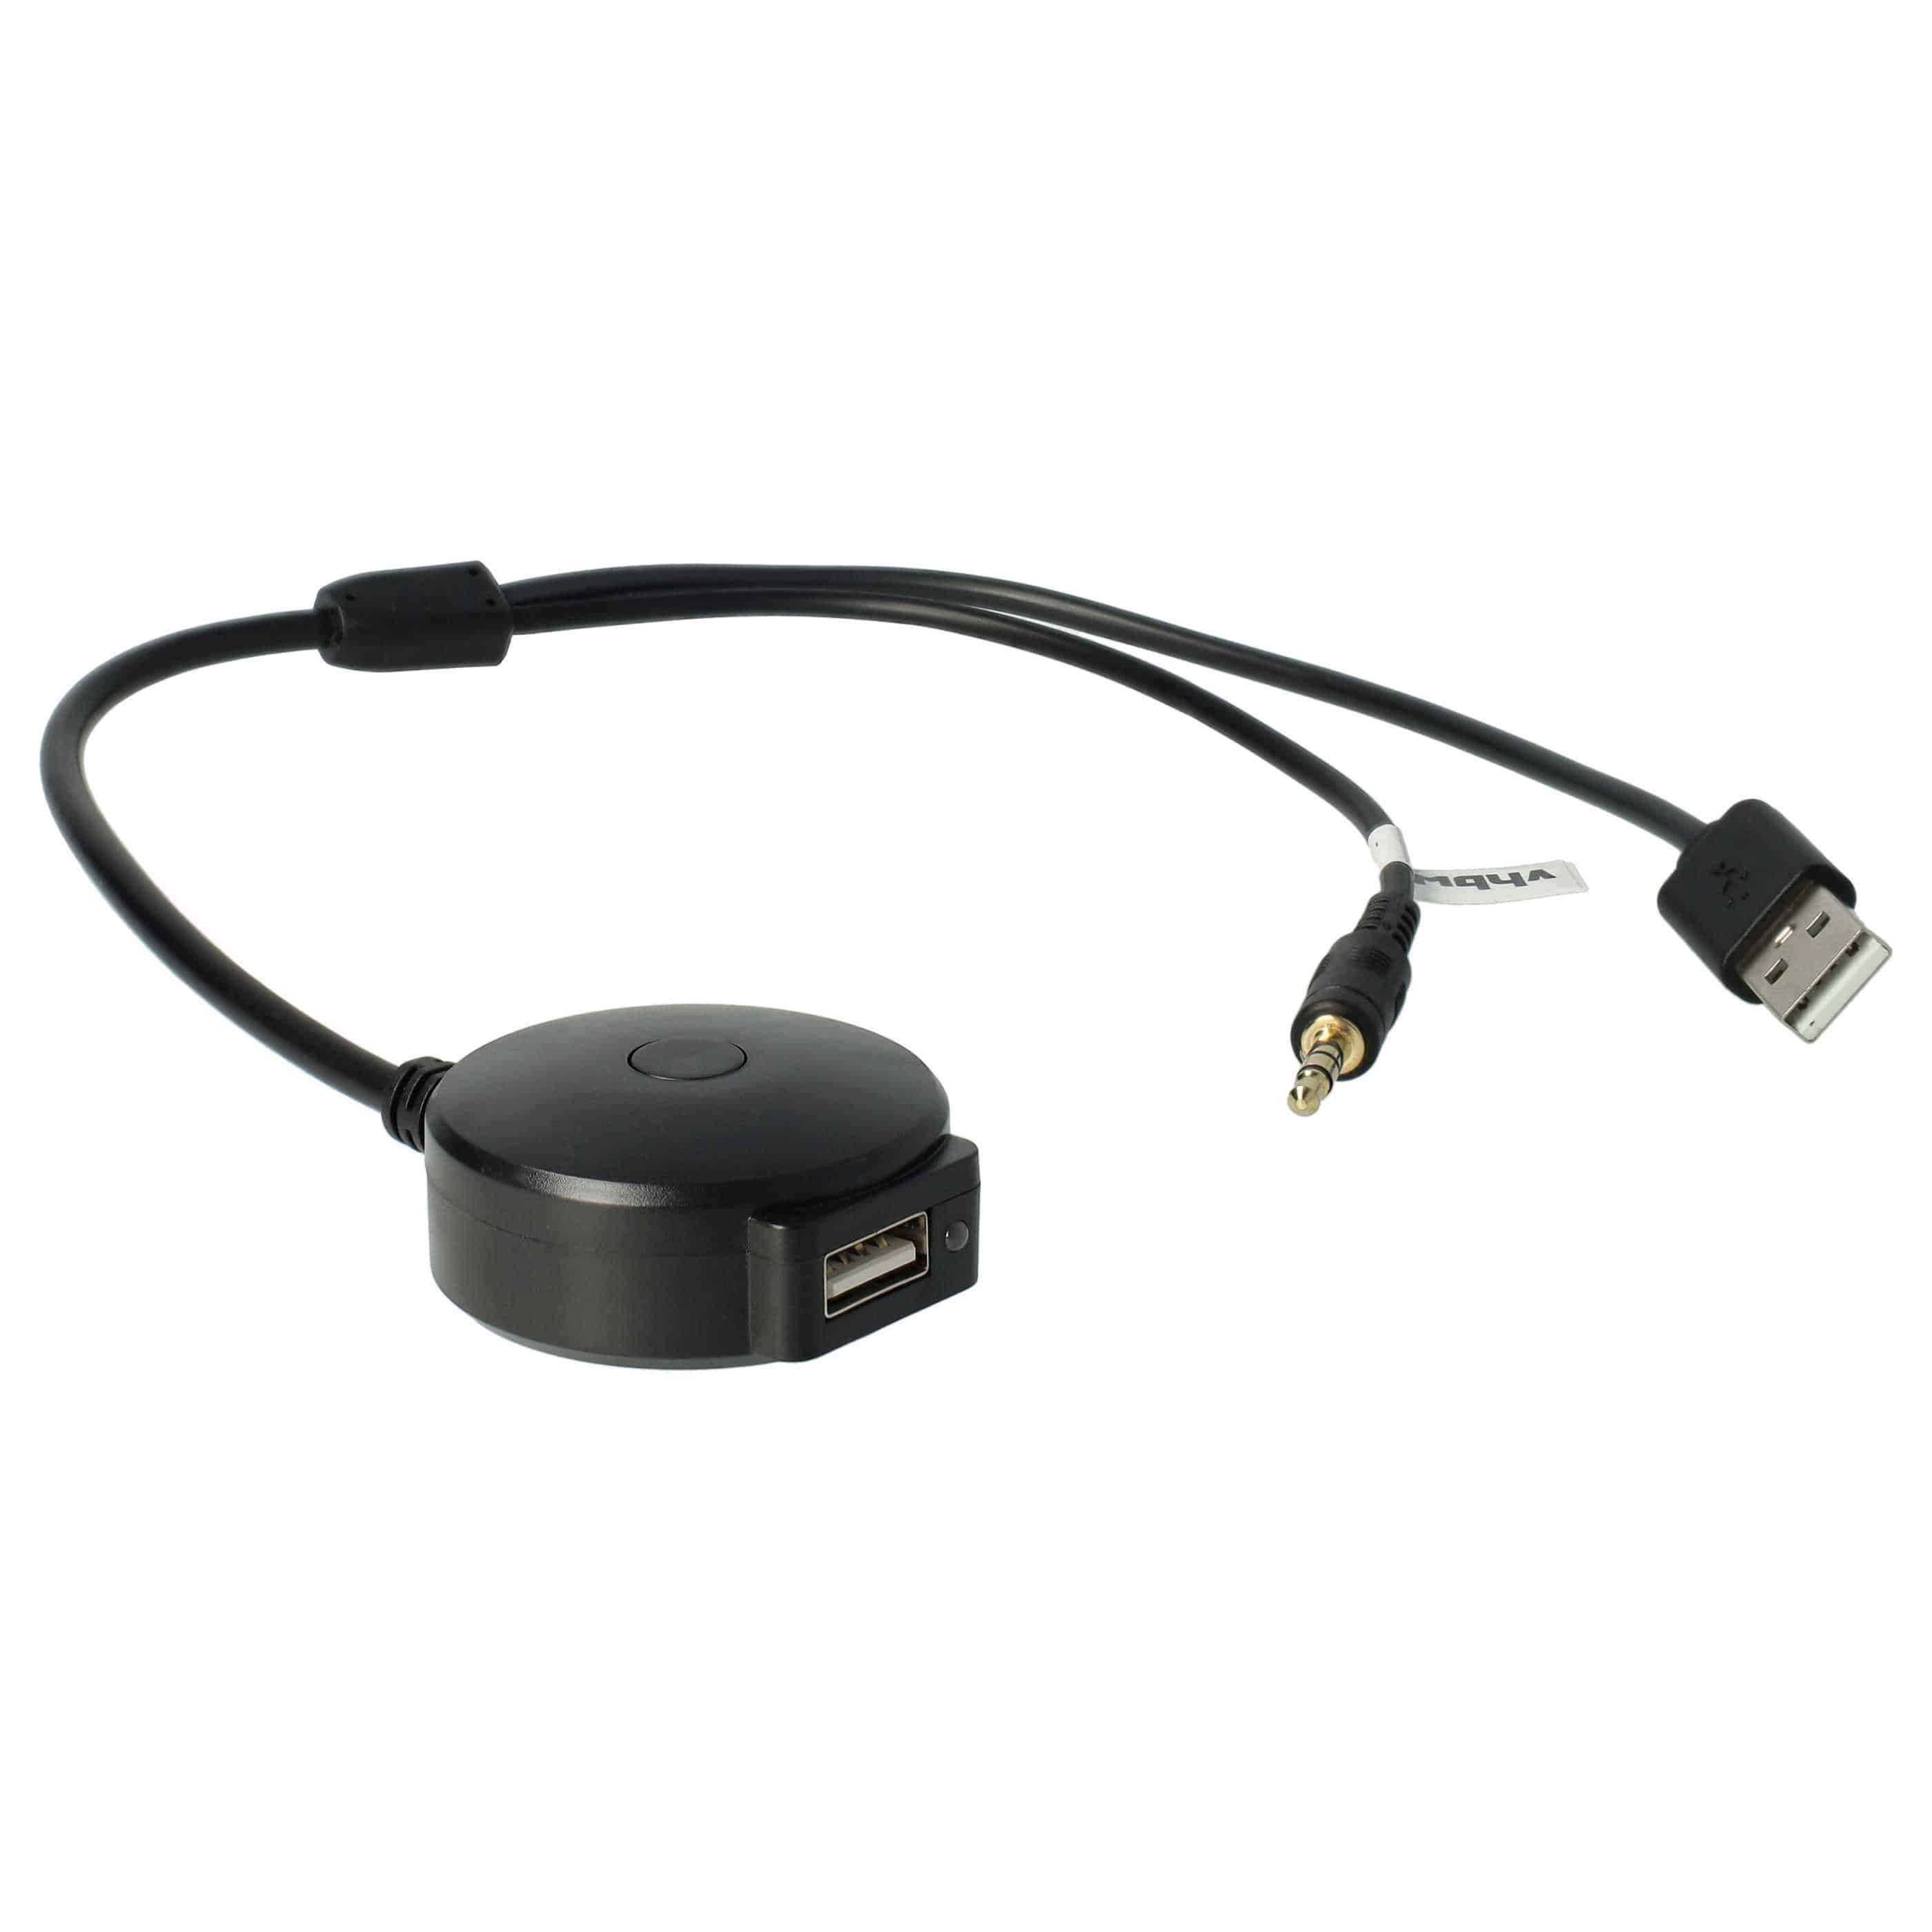 Cavo adattatore audio AUX per MINI, BMW R56 autoradio ecc - USB, Bluetooth